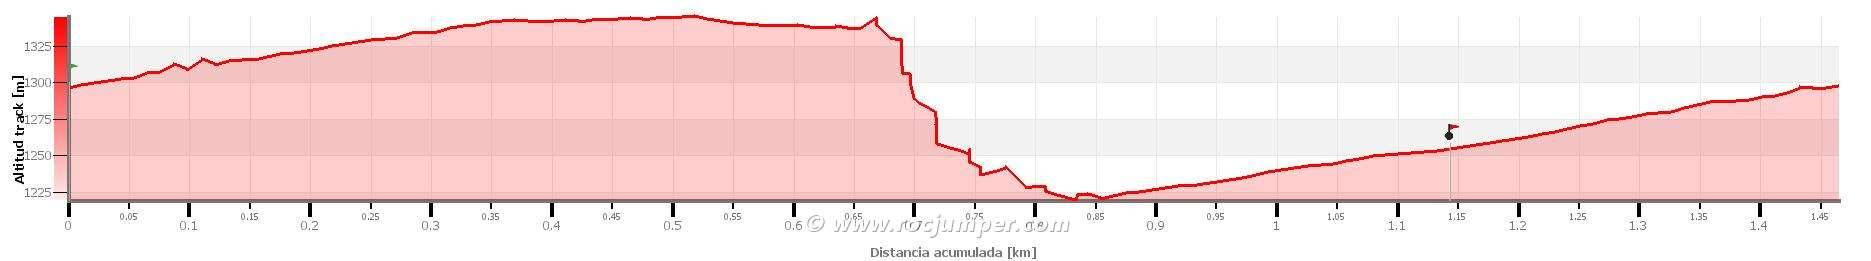 Altimetría - Torrent de Forat Negre v3-a3-II (Vallcebre, Barcelona) - RocJumper